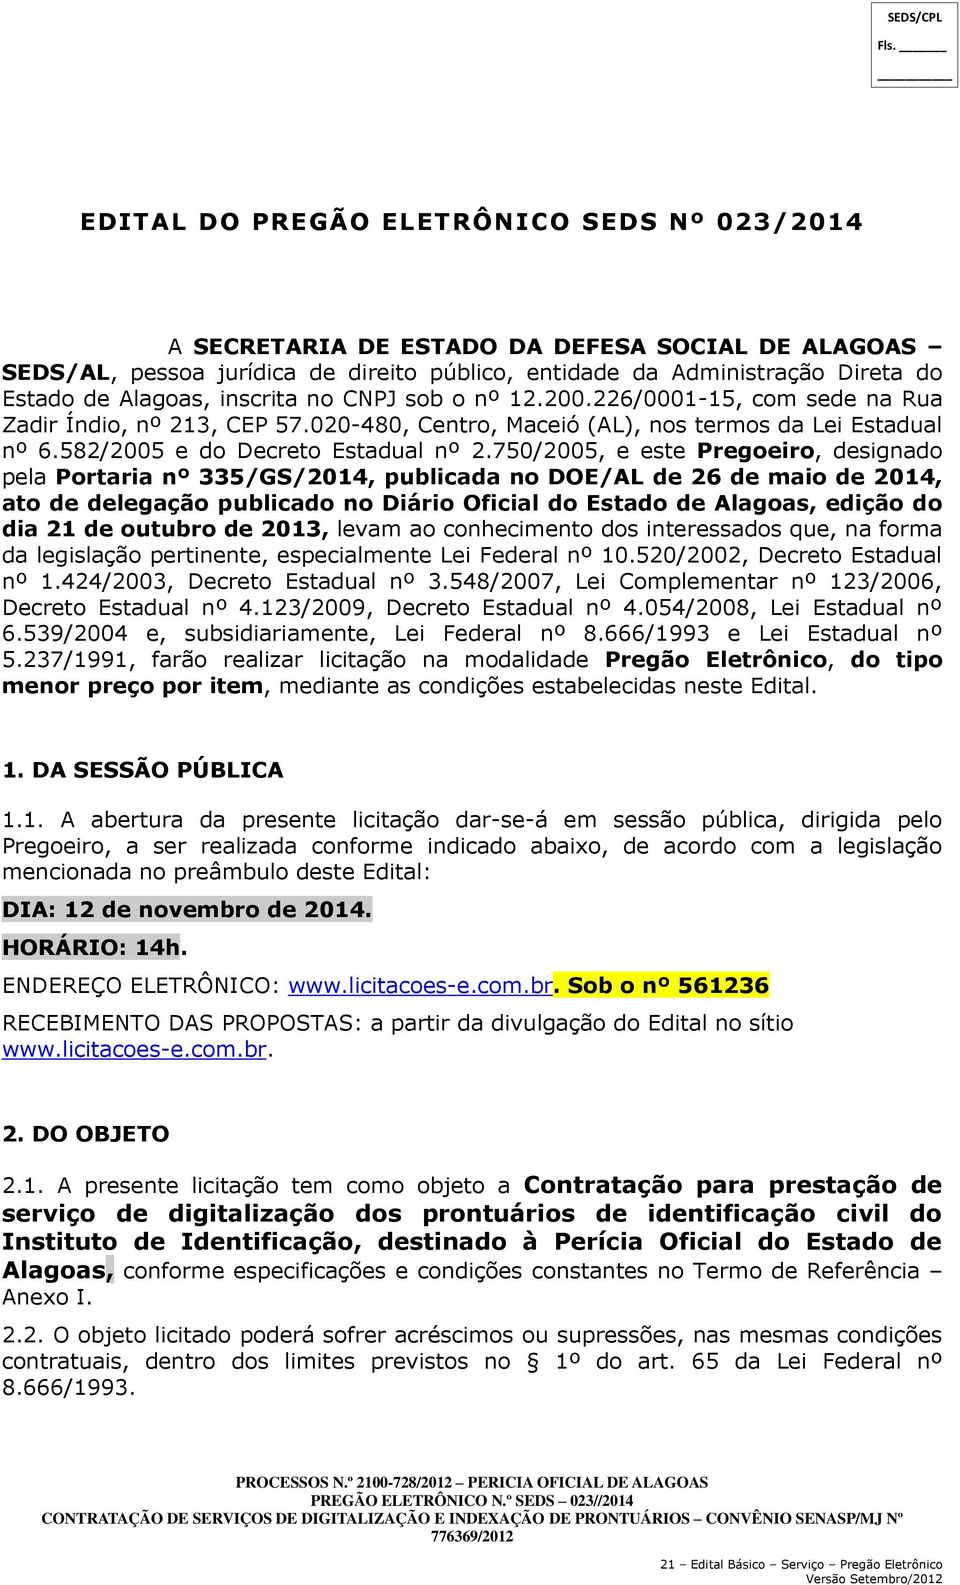 750/2005, e este Pregoeiro, designado pela Portaria nº 335/GS/2014, publicada no DOE/AL de 26 de maio de 2014, ato de delegação publicado no Diário Oficial do Estado de Alagoas, edição do dia 21 de